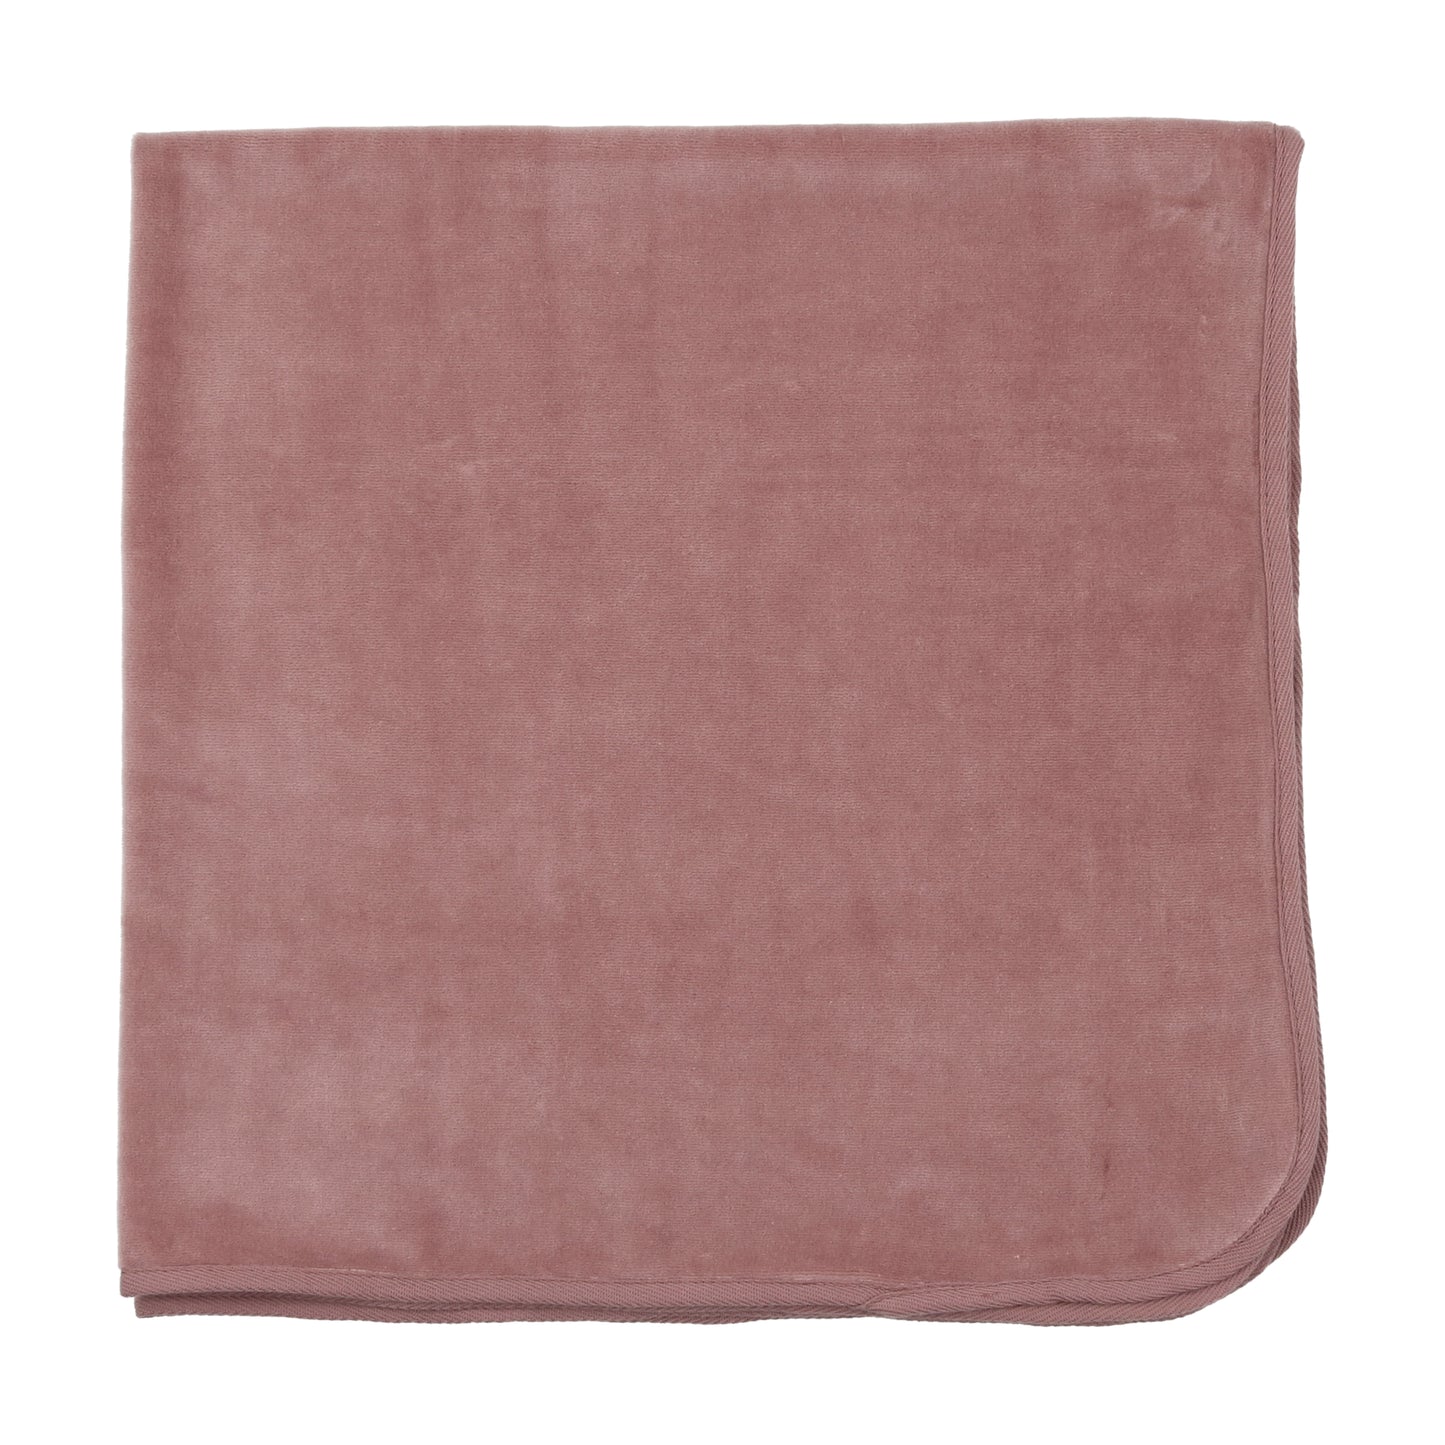 Assorted Receiving Blanket- Velour